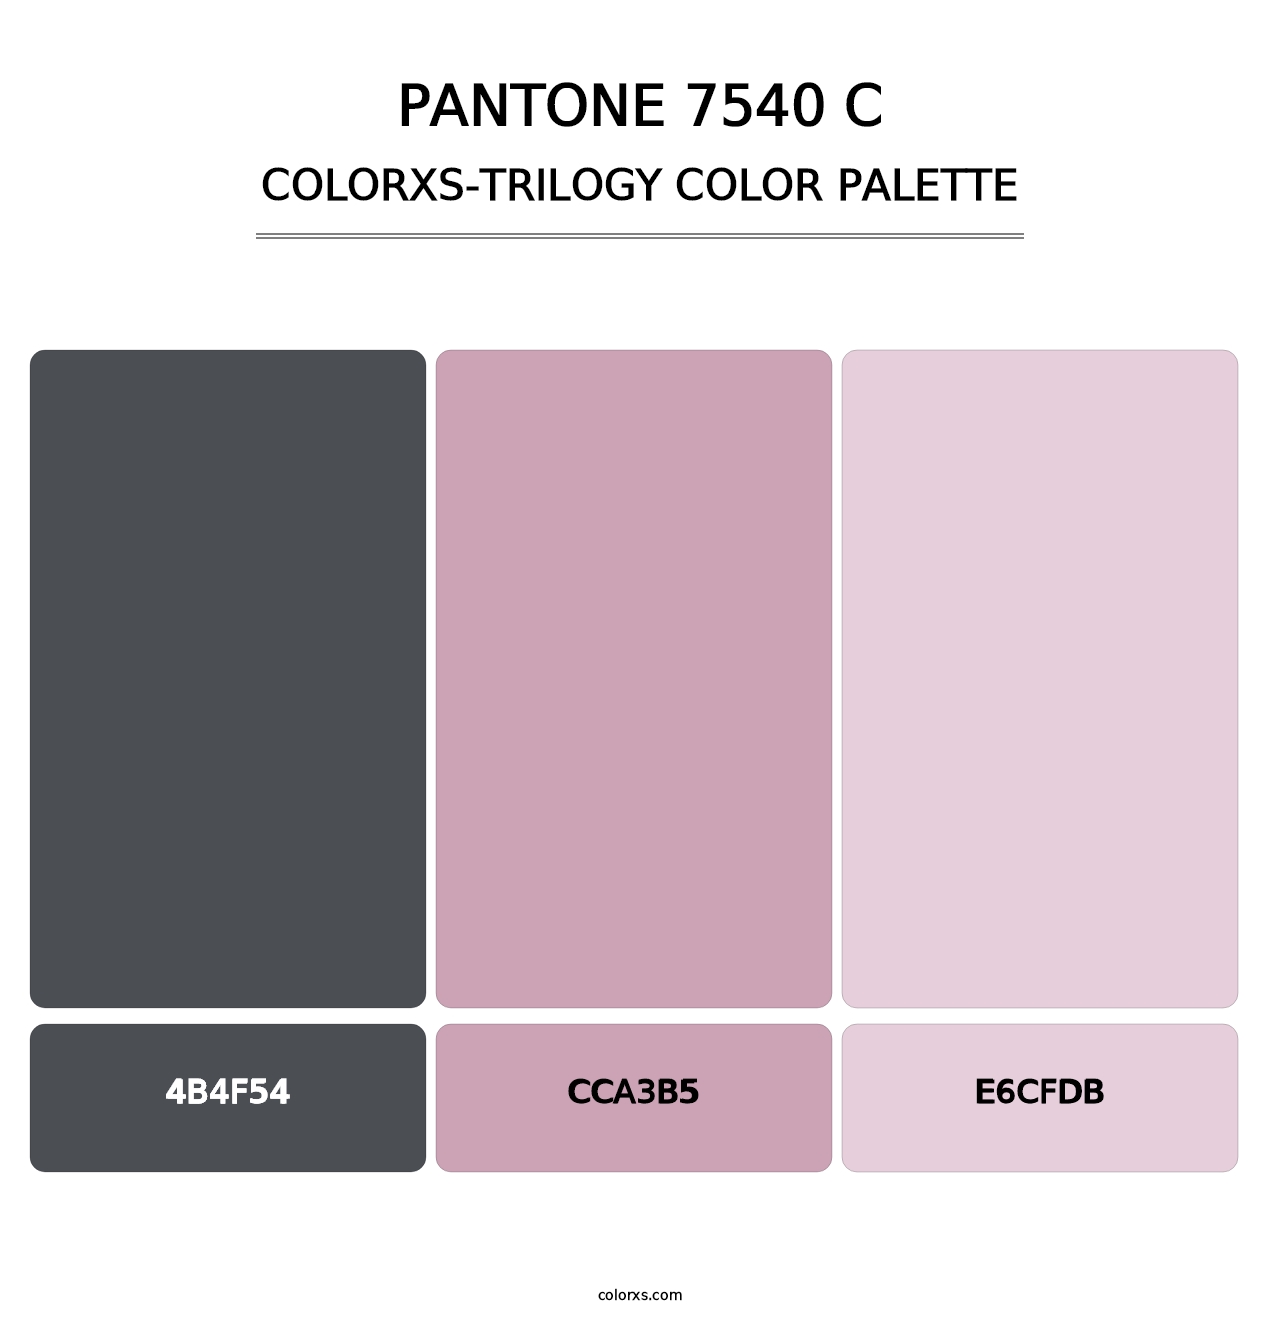 PANTONE 7540 C - Colorxs Trilogy Palette